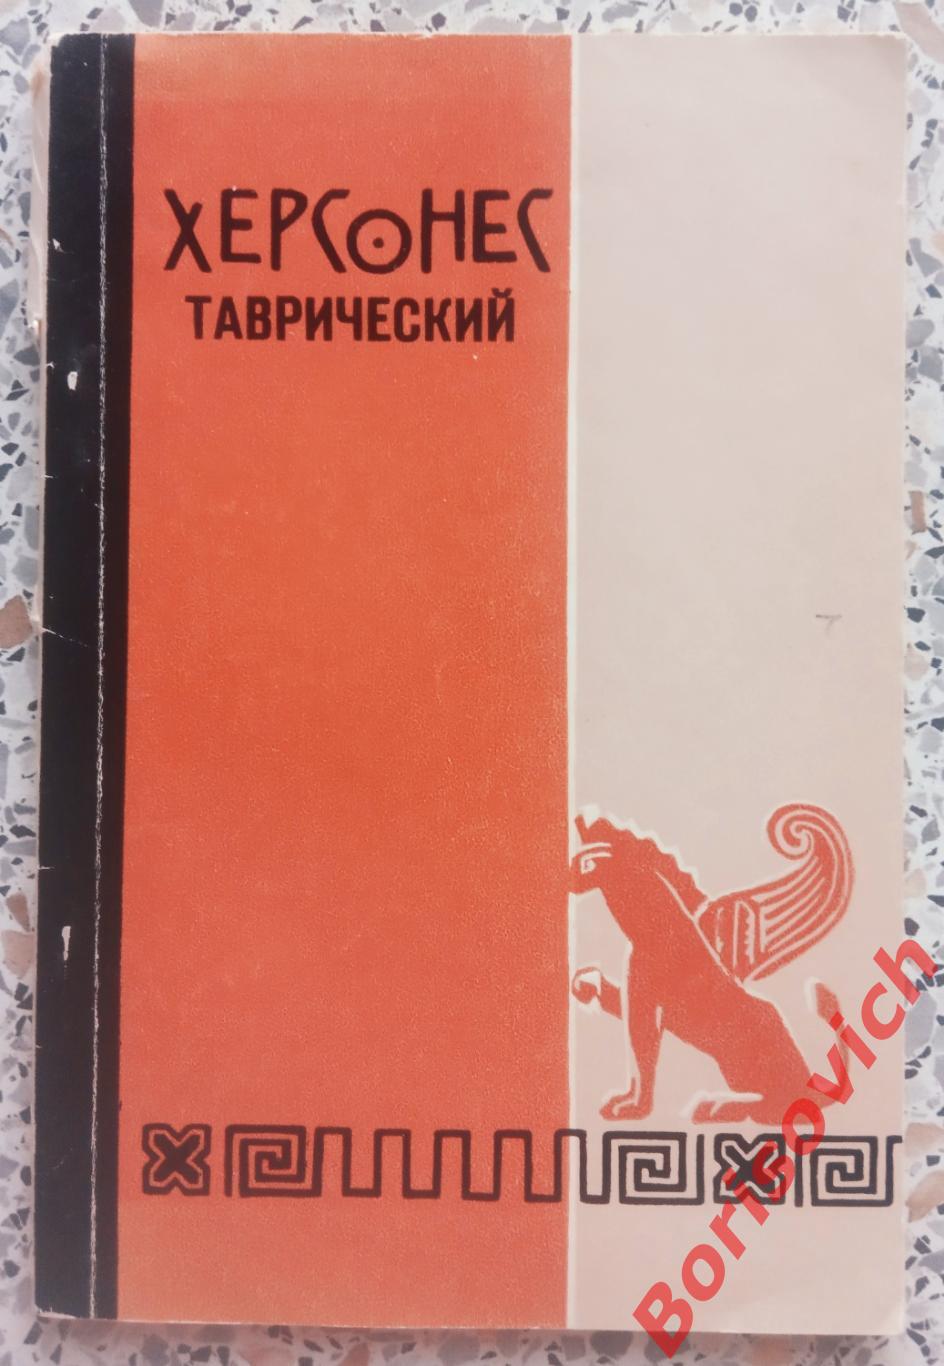 ХЕРСОНЕС ТАВРИЧЕСКИЙ Таврия Симферополь 1972 г 100 страниц